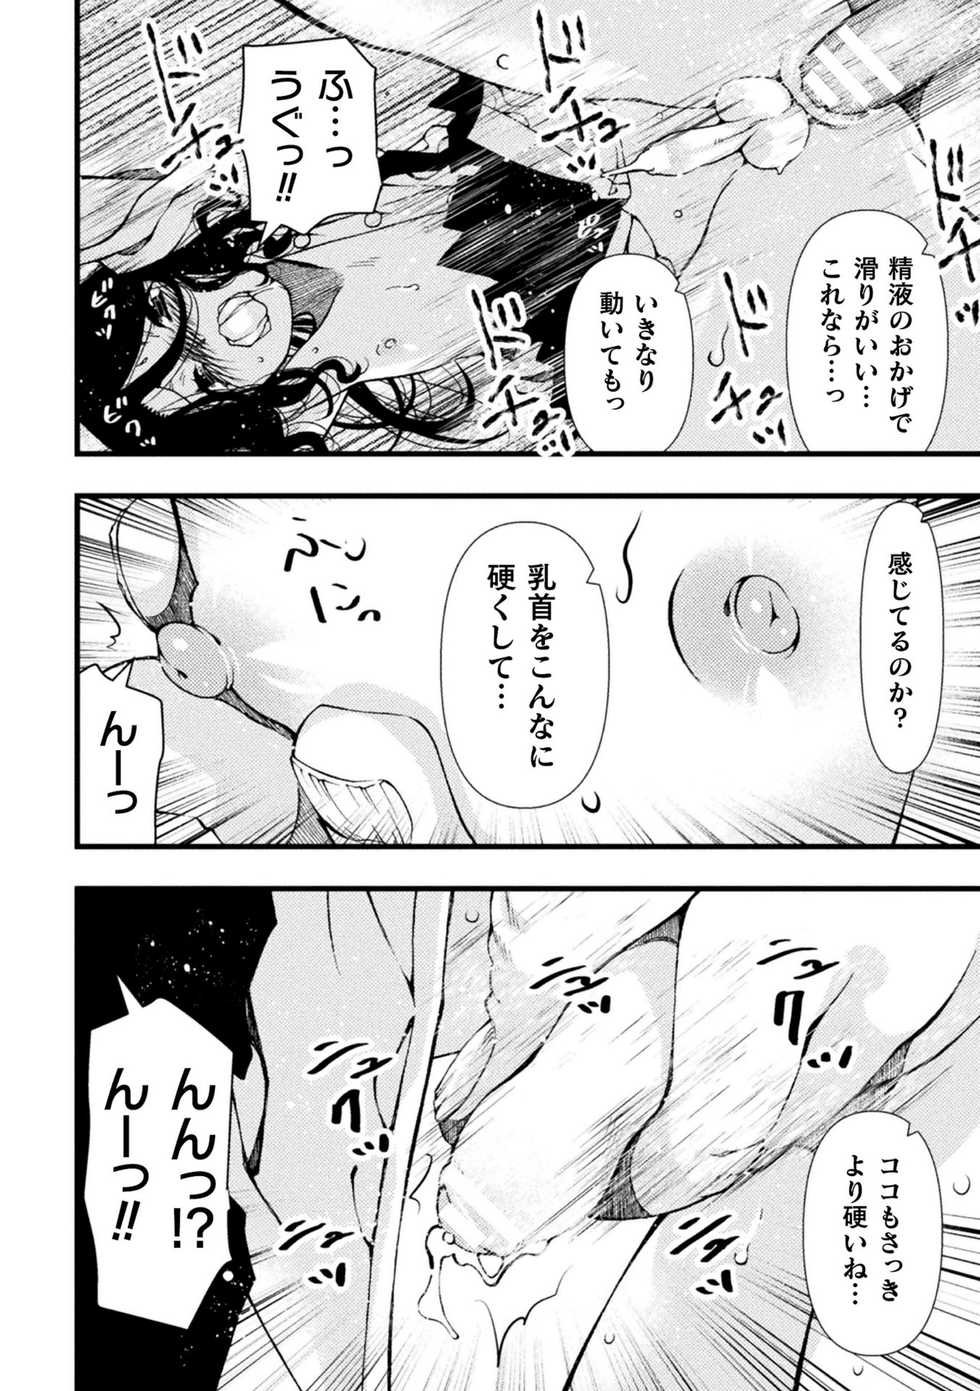 [Anthology] 2D Comic Magazine Mesugaki Otokonoko Seisai Ikiru Shiriana o Wakarase Bou de Goshidou Gobentatsu! Vol. 1 [Digital] - Page 16